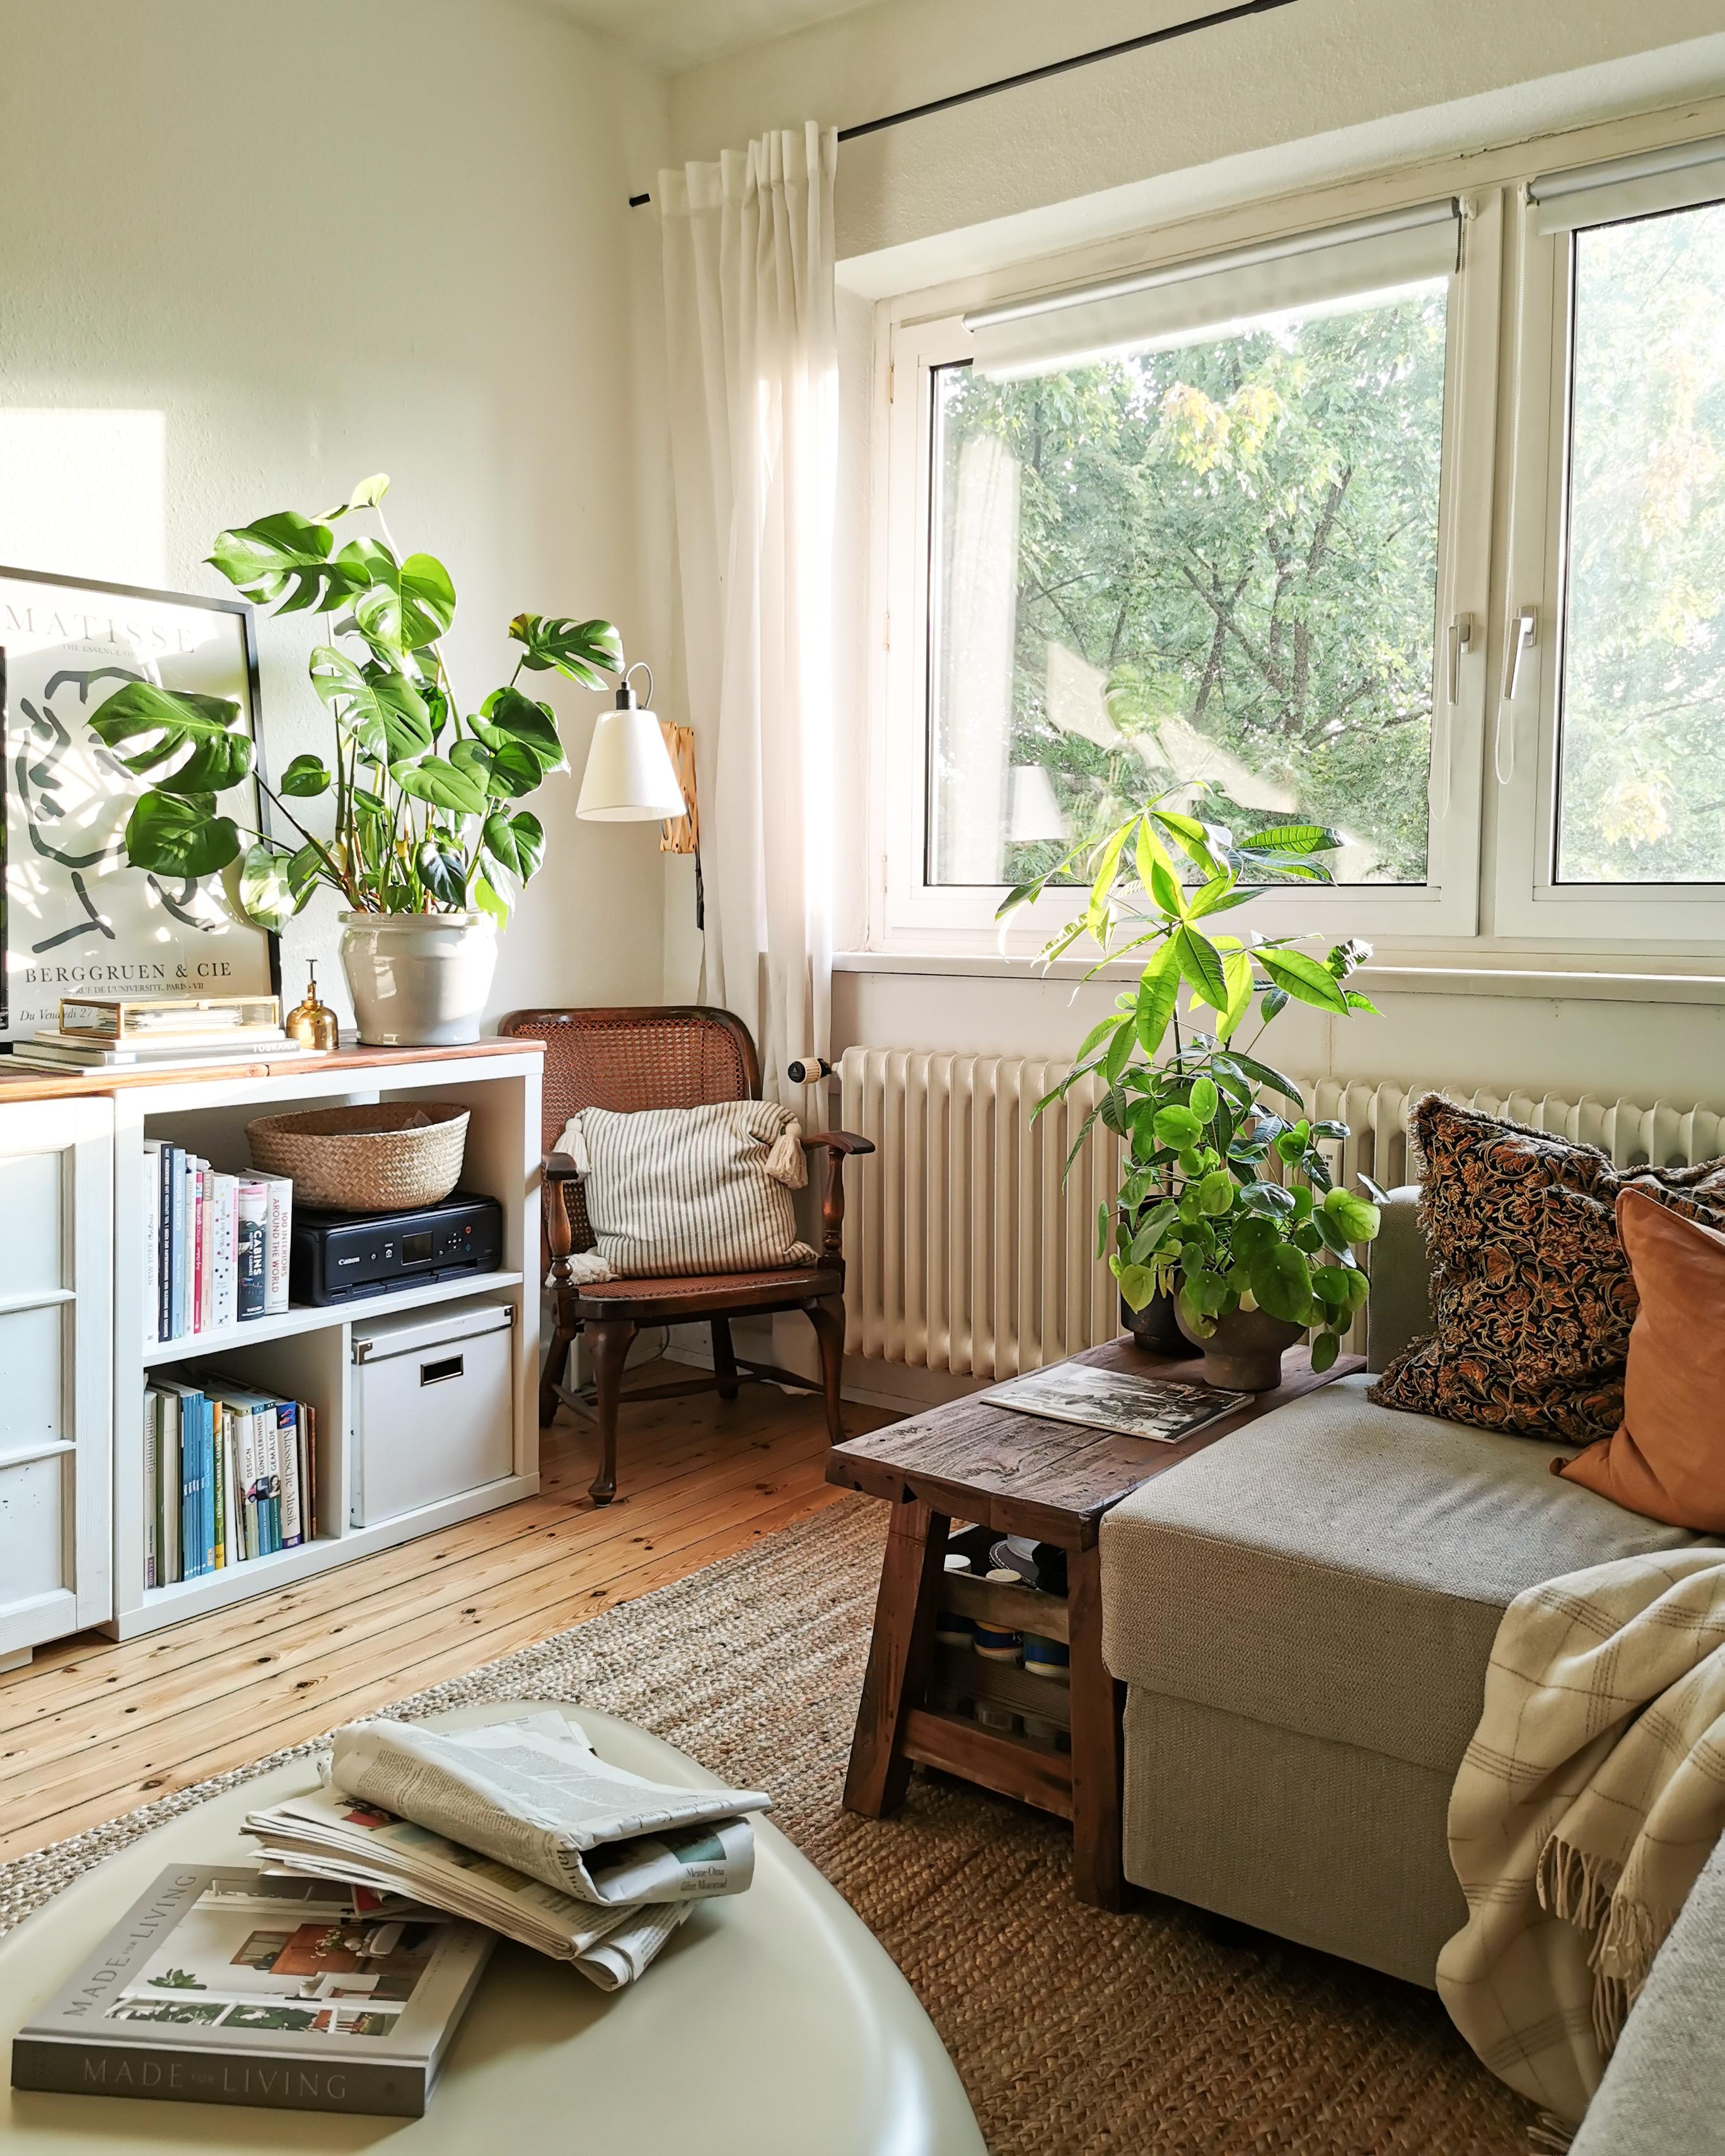 Der Wiener Geflecht Stuhl aus zweiter Hand fügt sich gut ein im #wohnzimmer 🙂
#livingchallenge #cozy #natural